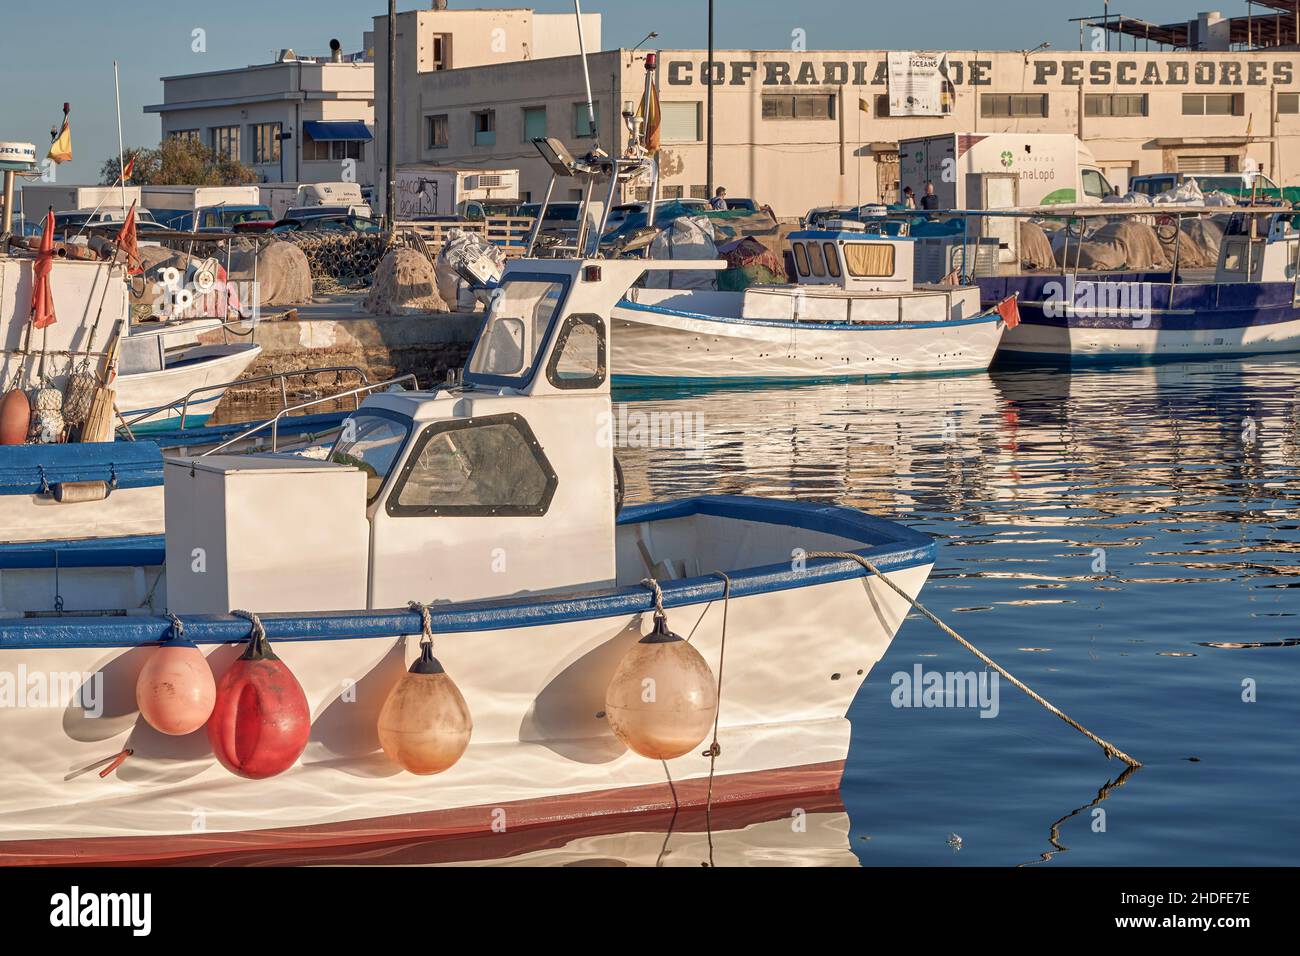 Gilda di pescatori con barche da pesca nel porto della città di Santa Pola in provincia di Alicante, Spagna, Europa Foto Stock